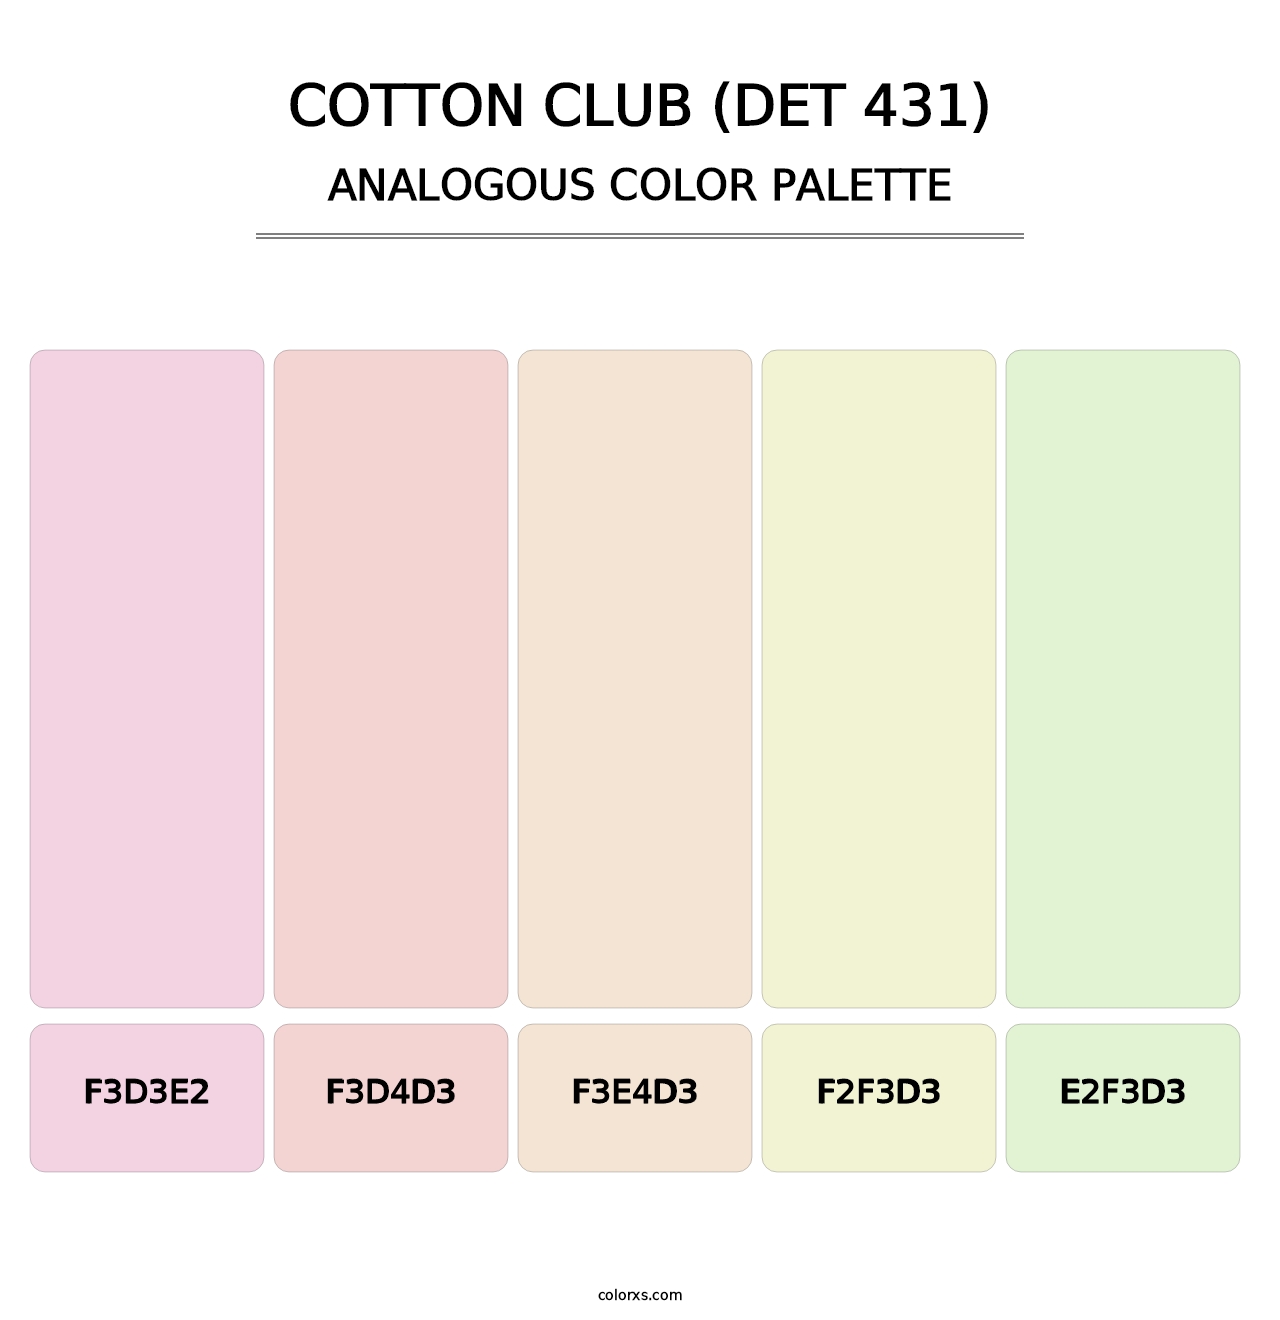 Cotton Club (DET 431) - Analogous Color Palette